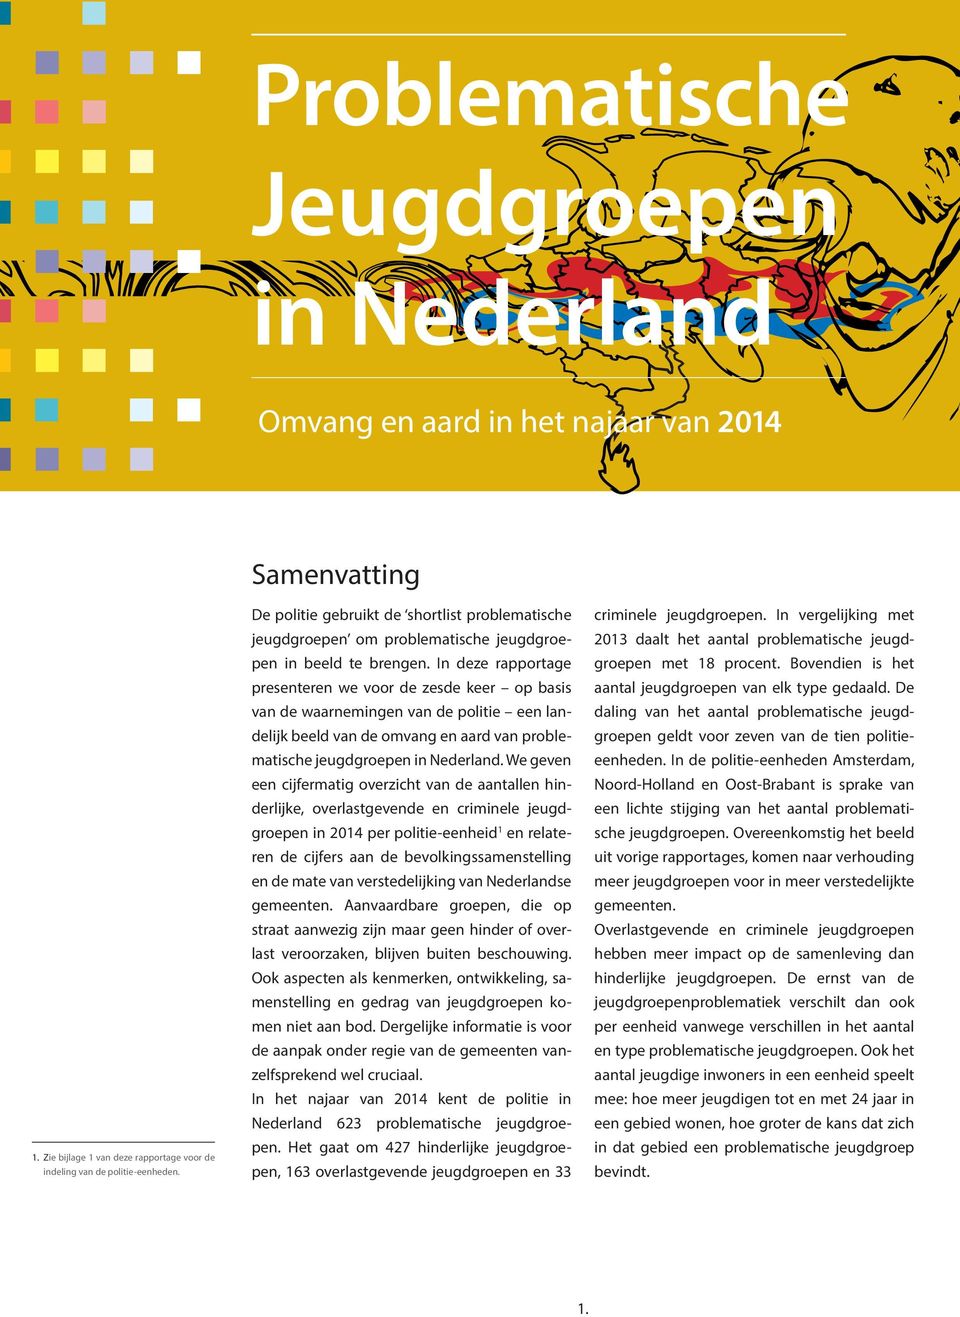 In deze rapportage presenteren we voor de zesde keer op basis van de waarnemingen van de politie een landelijk beeld van de omvang en aard van problematische jeugdgroepen in Nederland.